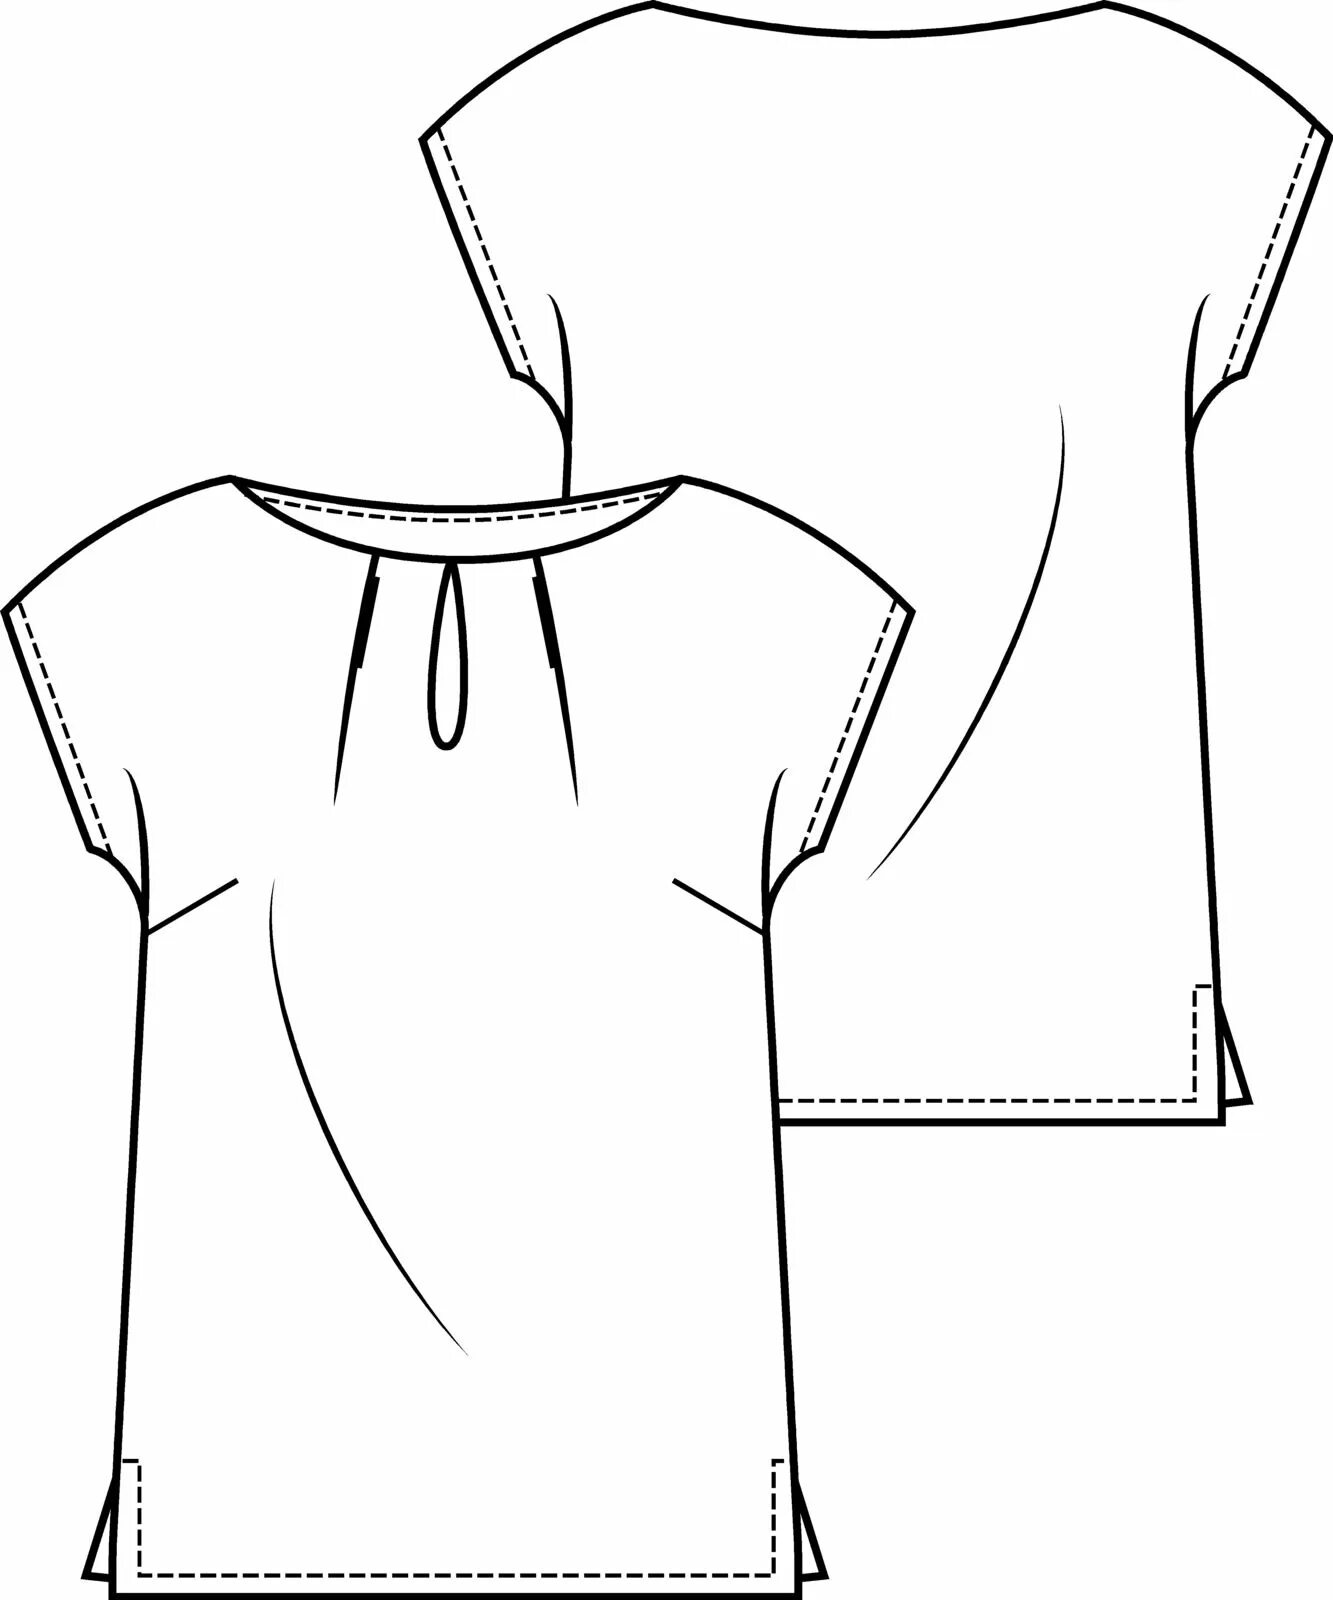 Блузка-футболка с цельнокроеным рукавом. Эскиз туники. Лекало блузки с цельнокроеным рукавом. Туника с цельнокроеным рукавом. Силуэт блузок